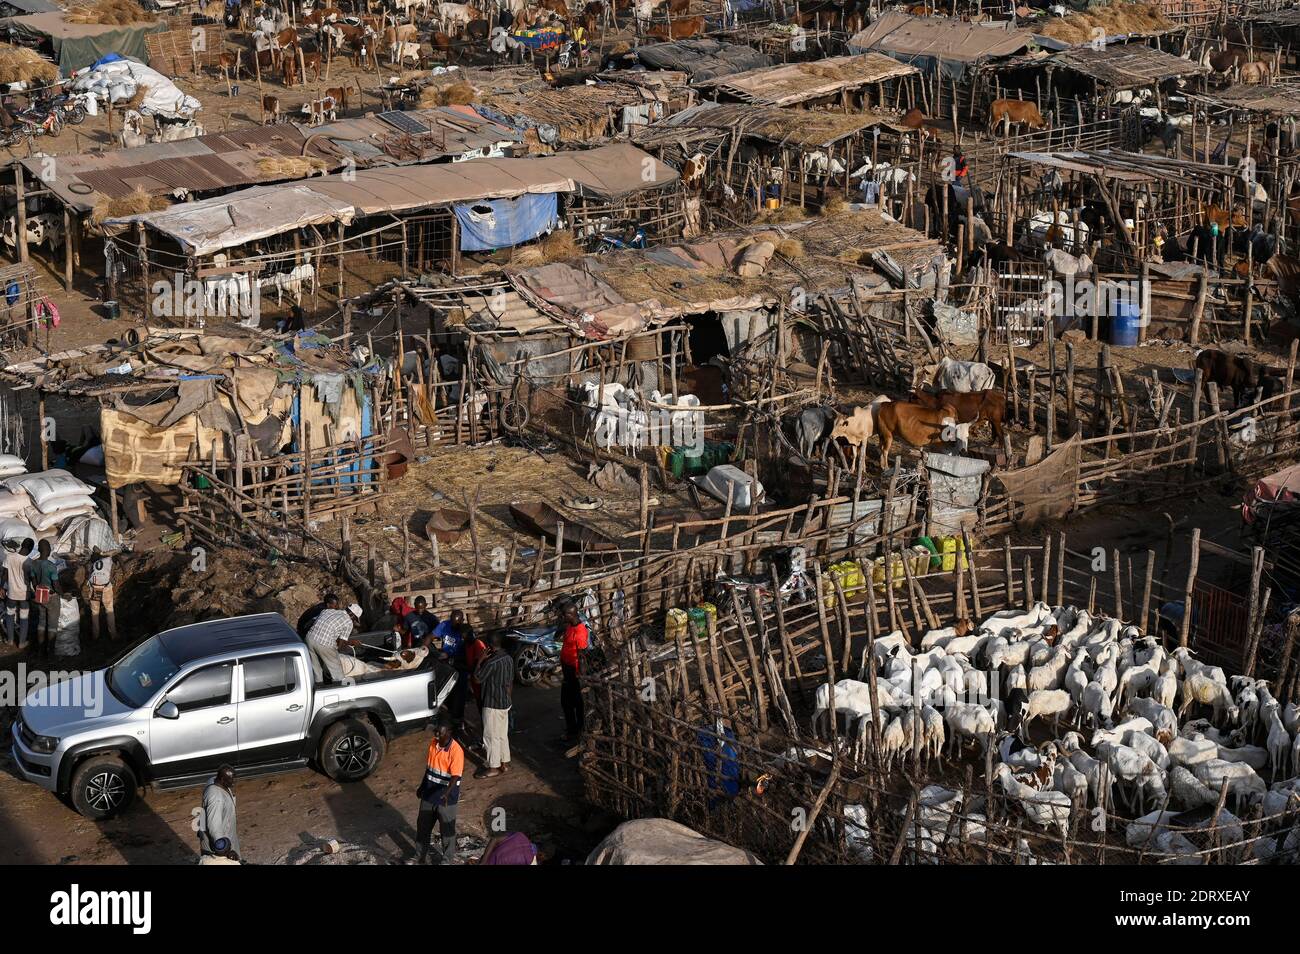 MALI, Bamako, IDP camp Faladjié, Peulh people settled here after ethnic conflicts with Dogon people in the region Mopti, cattle stable of Peulh herdsmen / Faladié, Peulh Fluechtlinge haben sich nach ethnischen Konflikten mit Dogon in der Region Mopti hier angesiedelt, Peulh mit ihren Tierherden Stock Photo